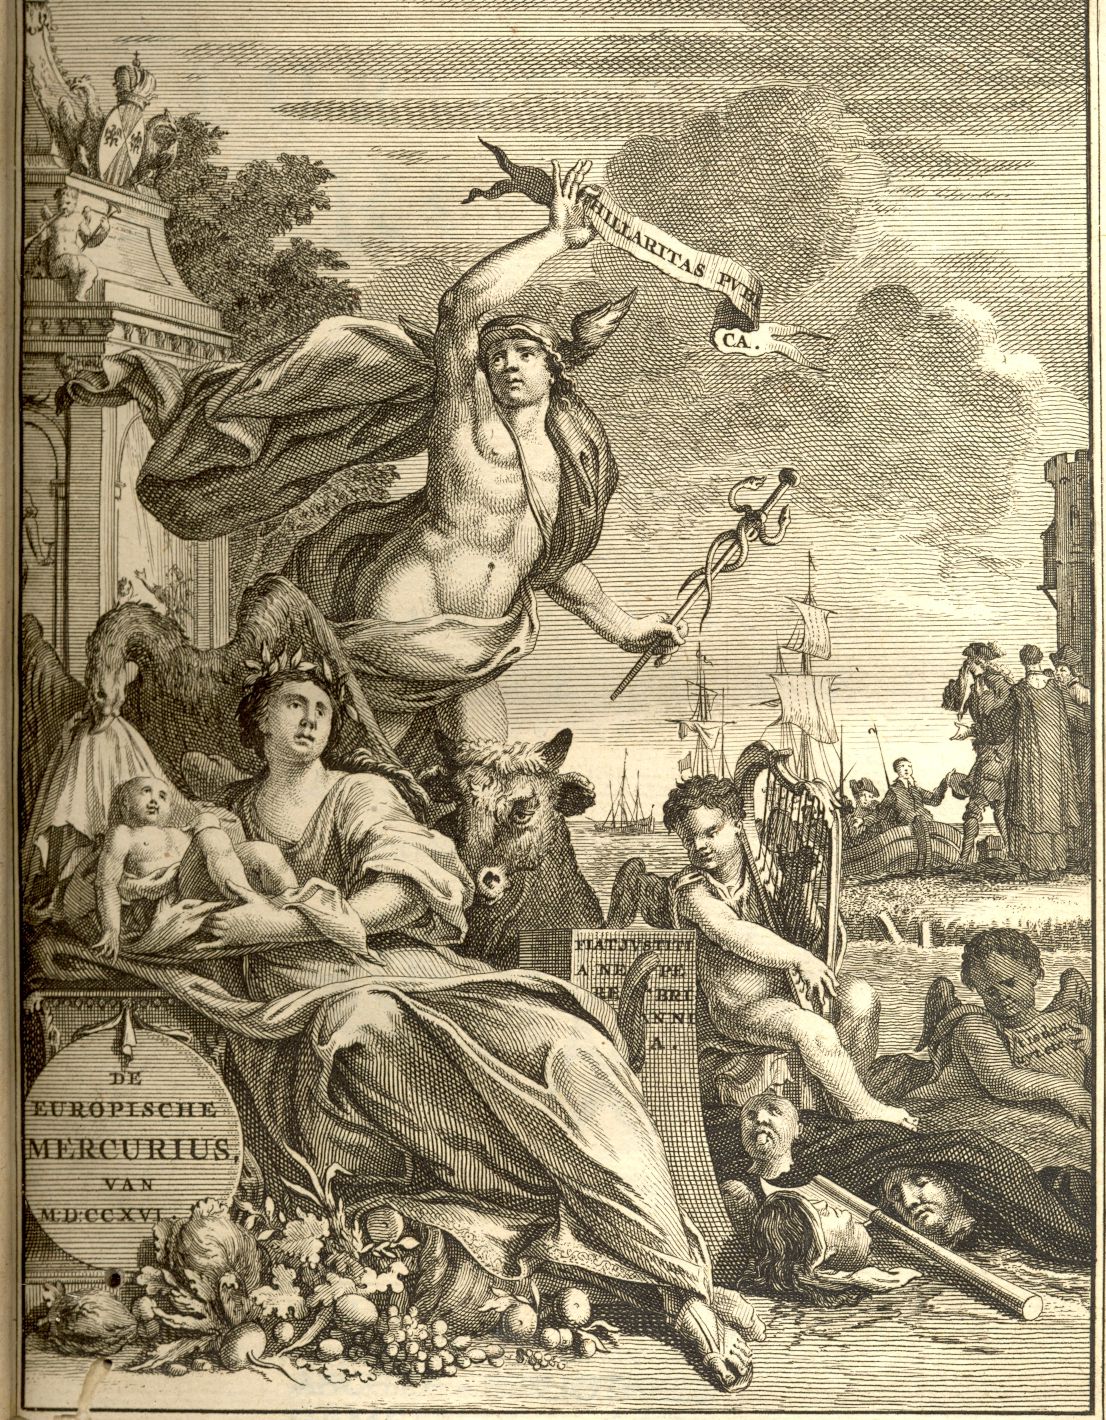 Europische Mercurius 1716.